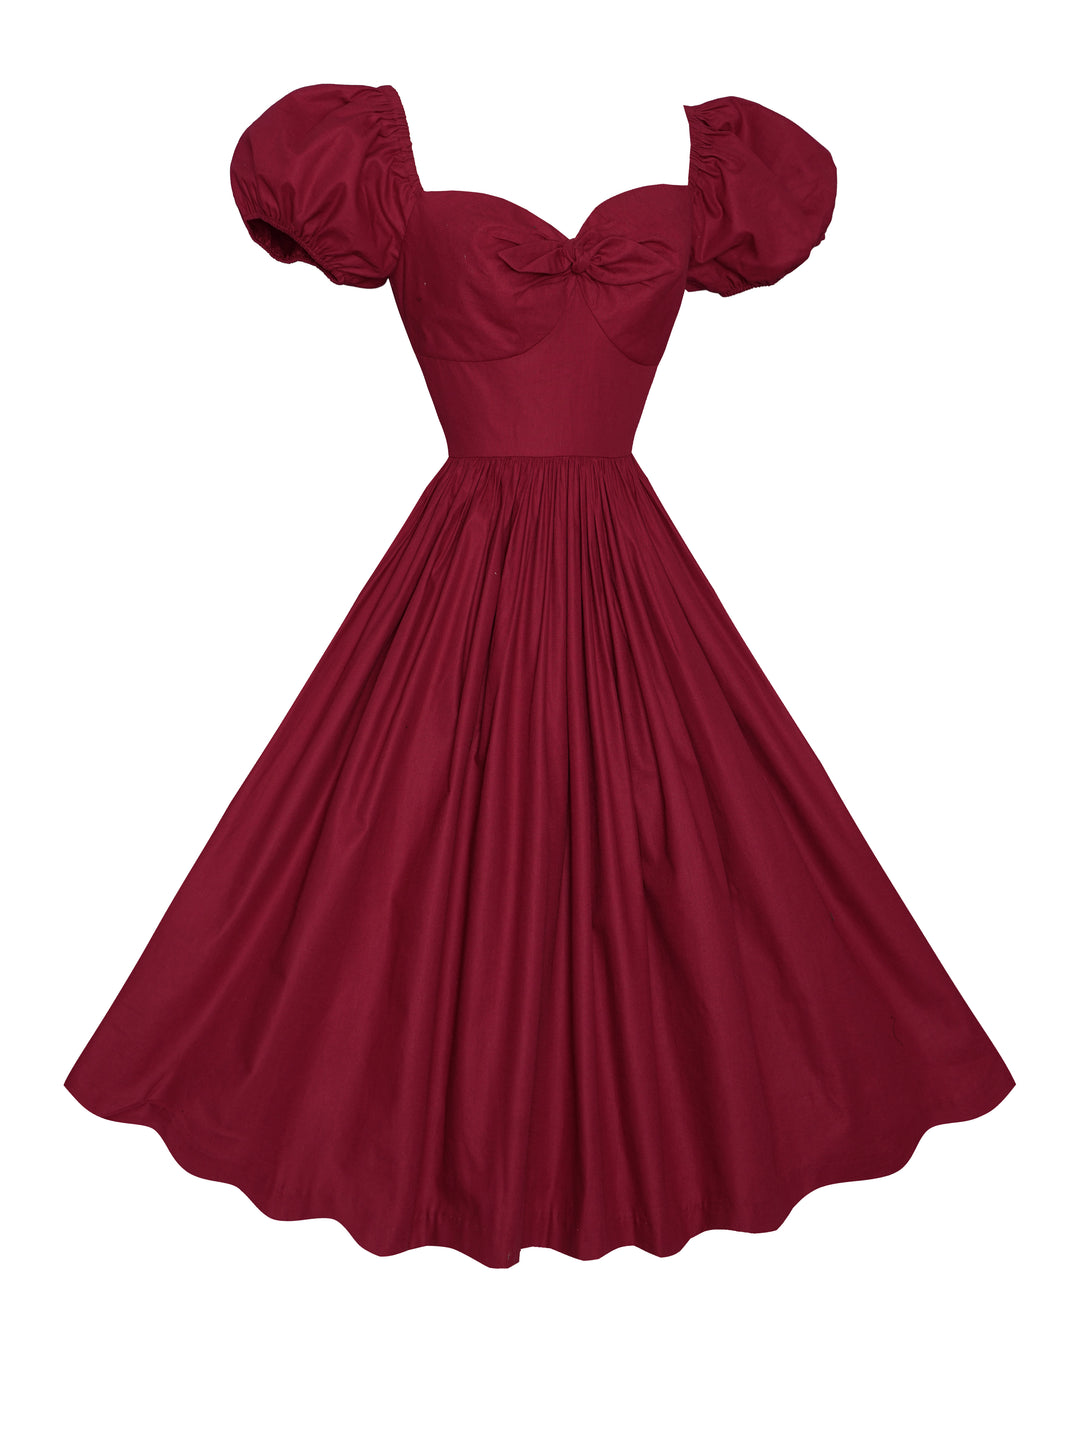 MTO - Dottie Dress in Burgundy Cotton